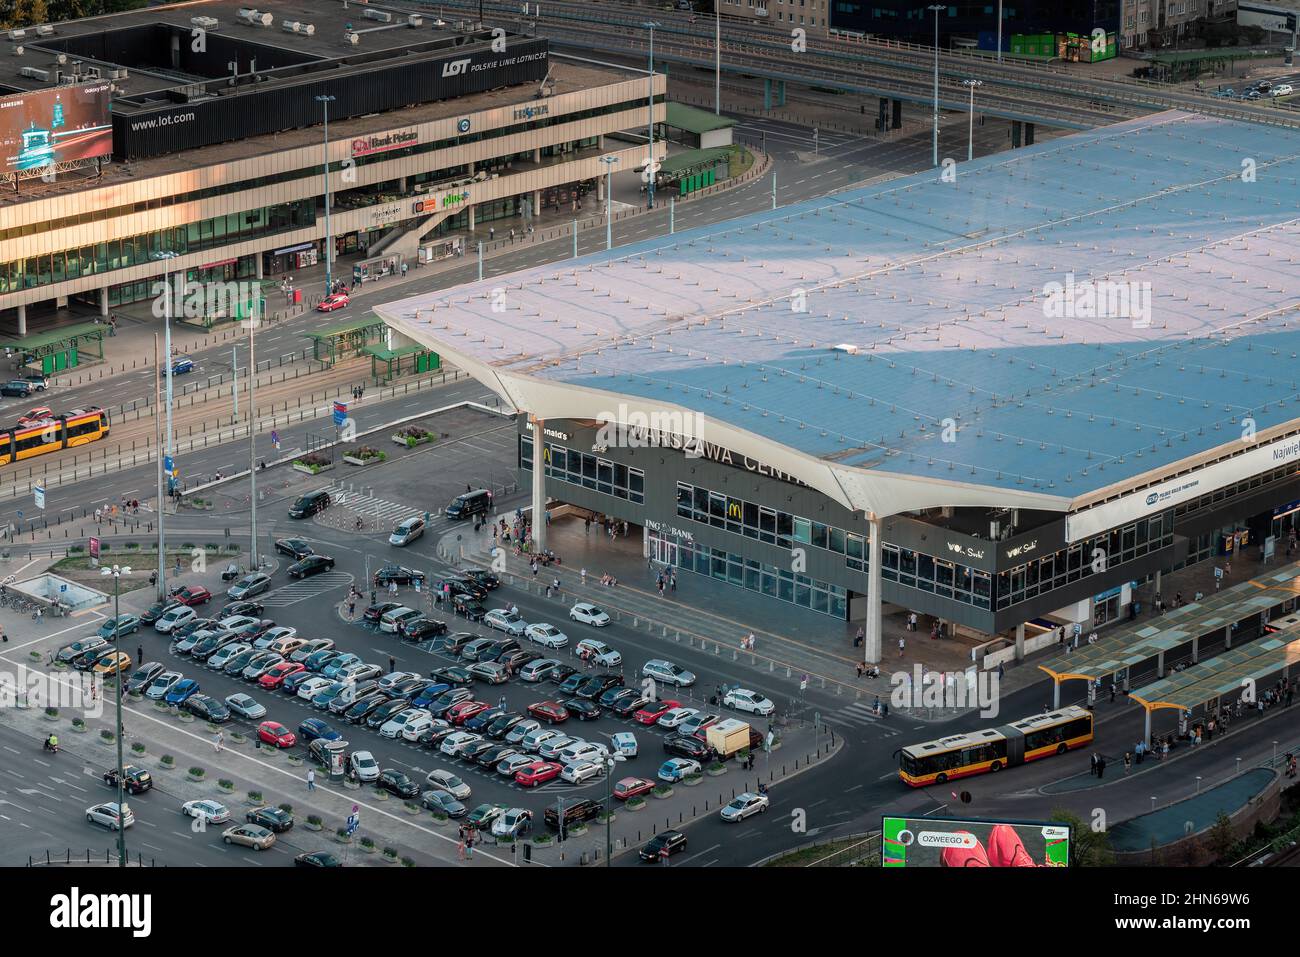 Aerial view of Warsaw Central Railway Station (Warszawa Centralna) - Warsaw, Poland Stock Photo